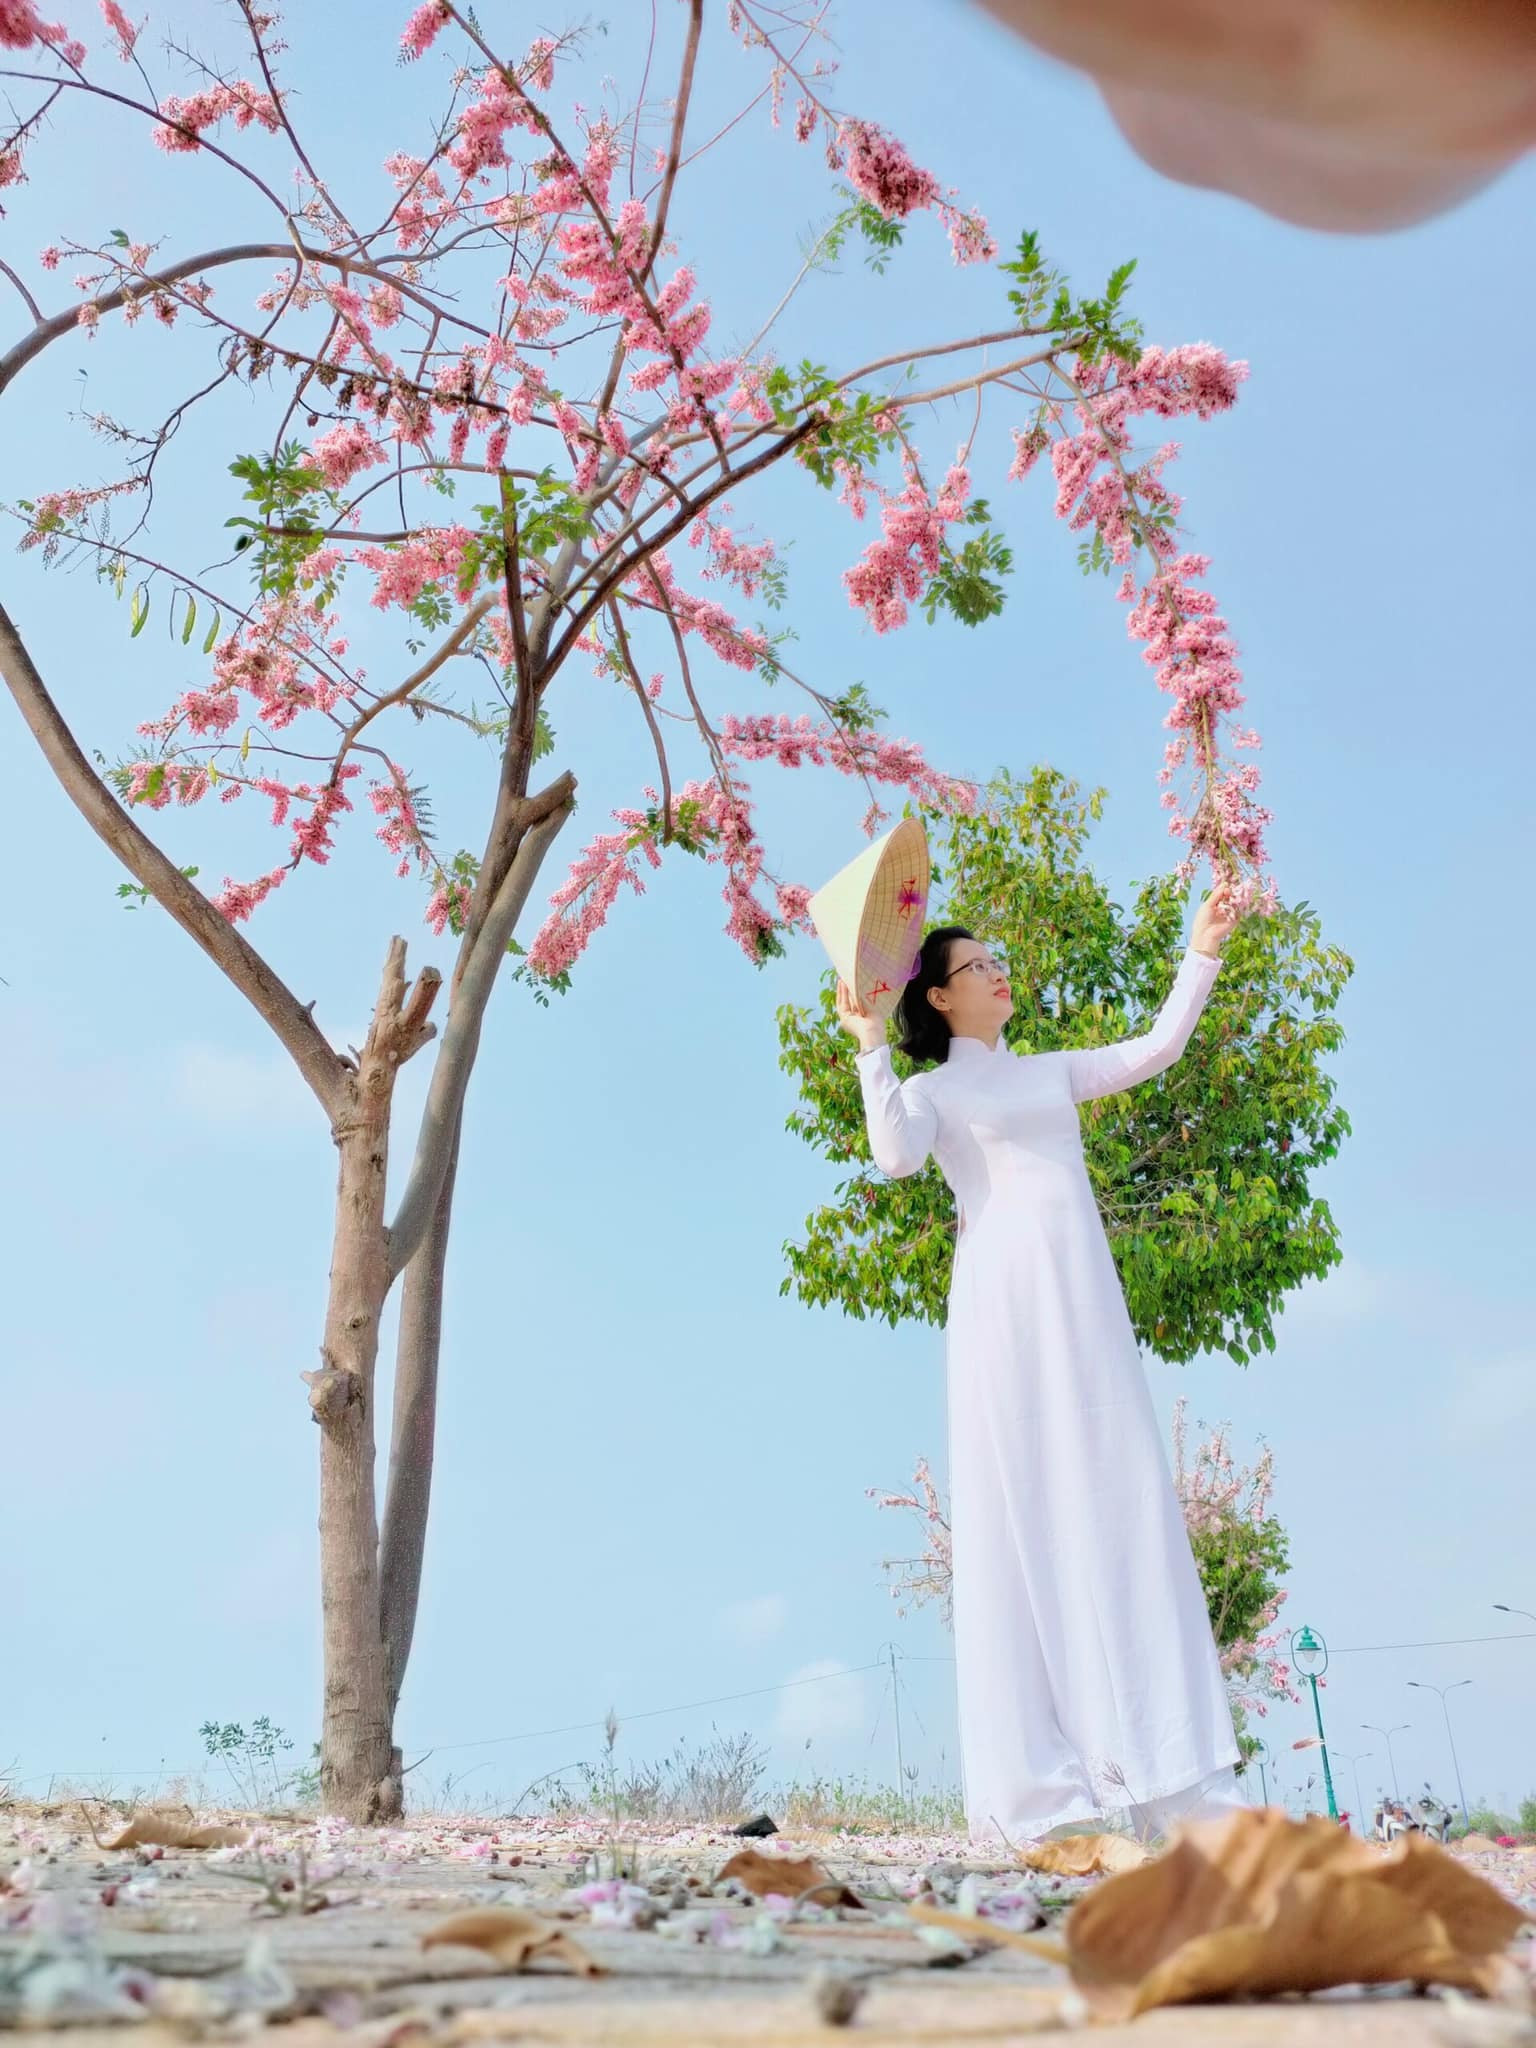 Mùa hoa: Hoa đỗ mai nở rộ đẹp không kém hoa đào, nơi check-in lại sát Sài Gòn - 12